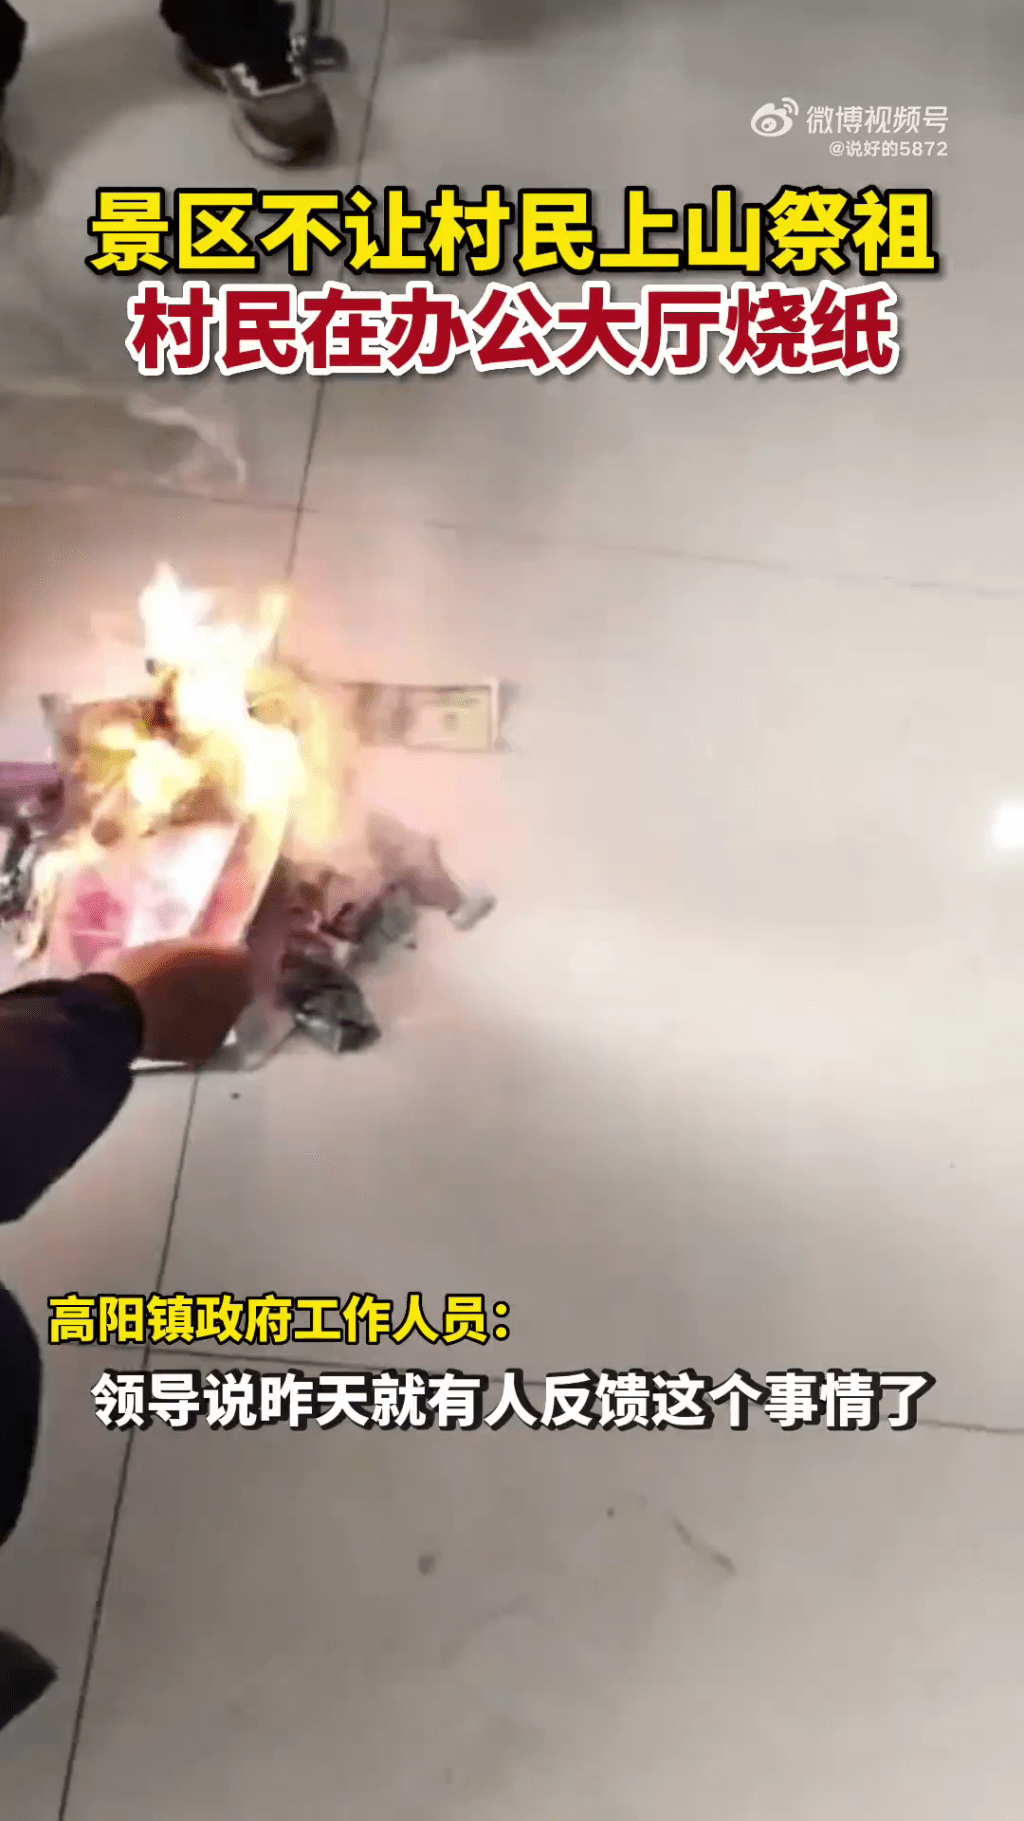 影片显示有人在金龙山景区大厅烧纸。